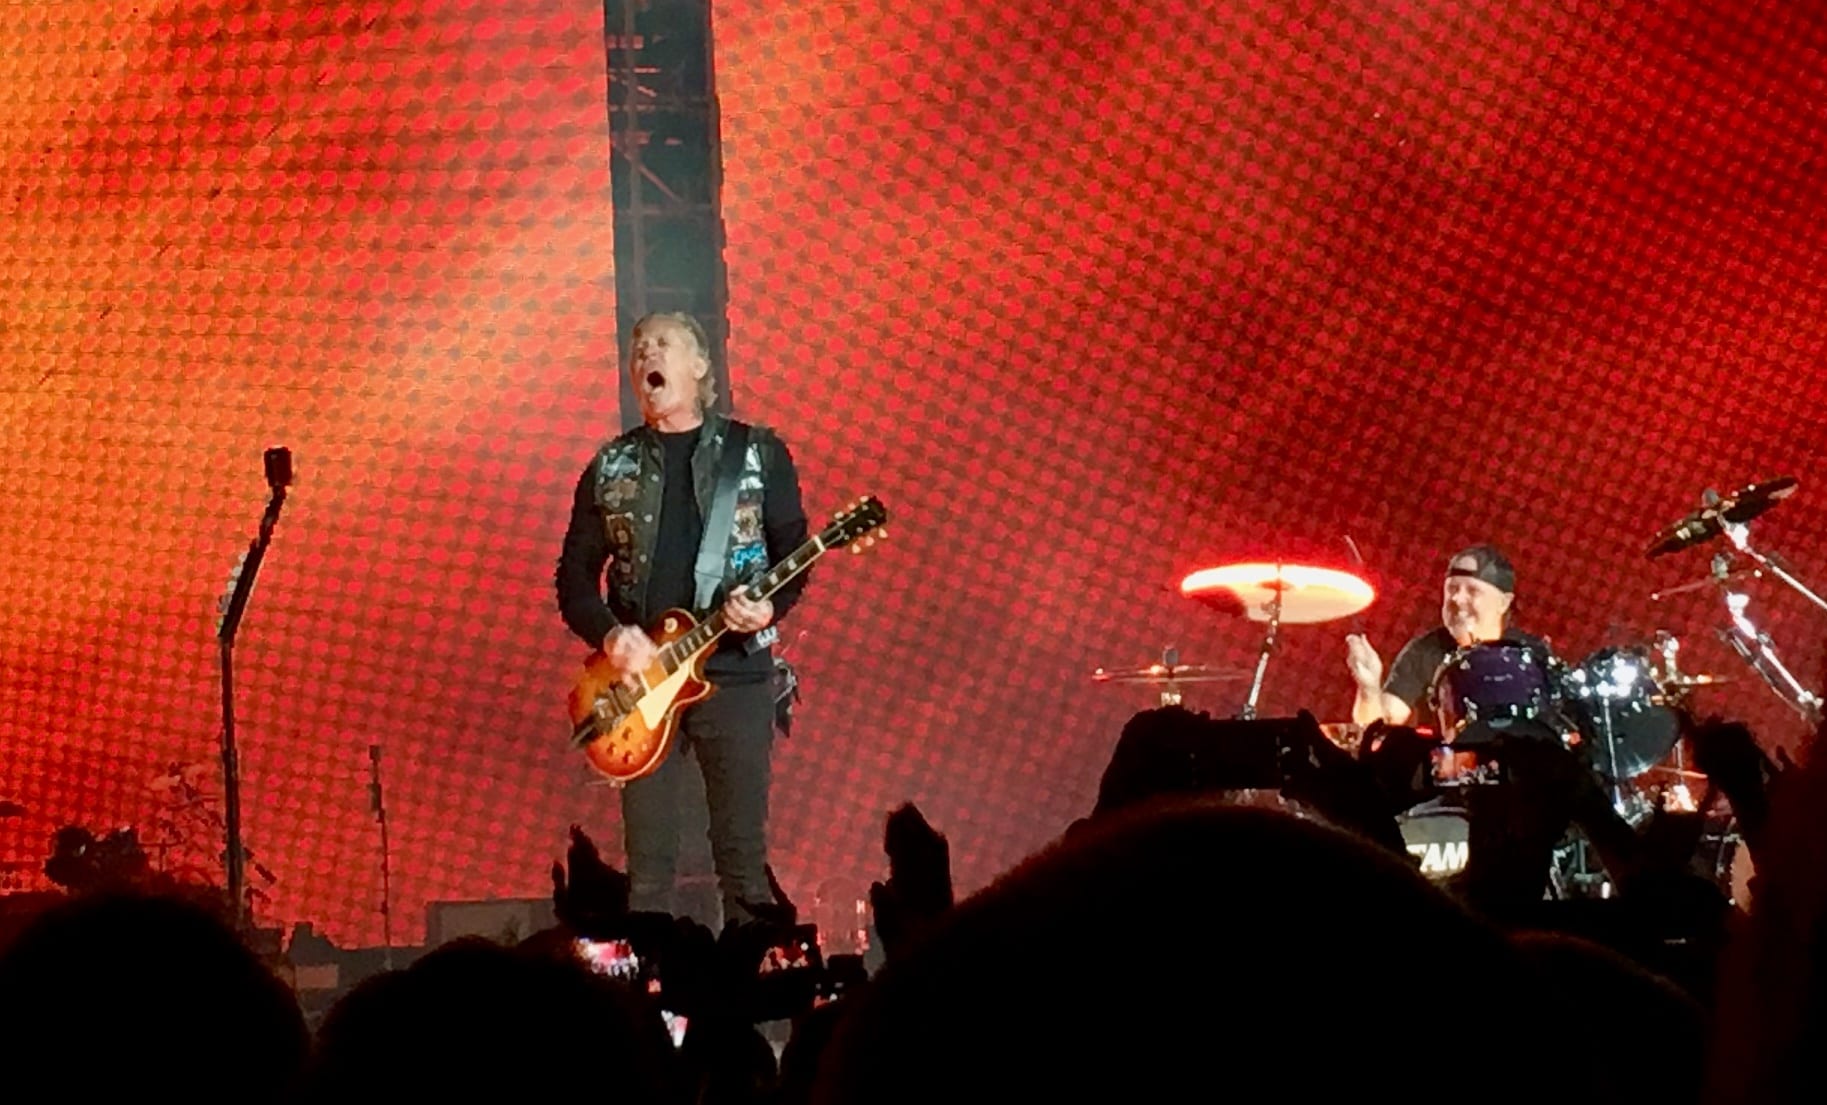 Crónica del concierto de Metallica en Madrid, Ifema, 03-05-2019